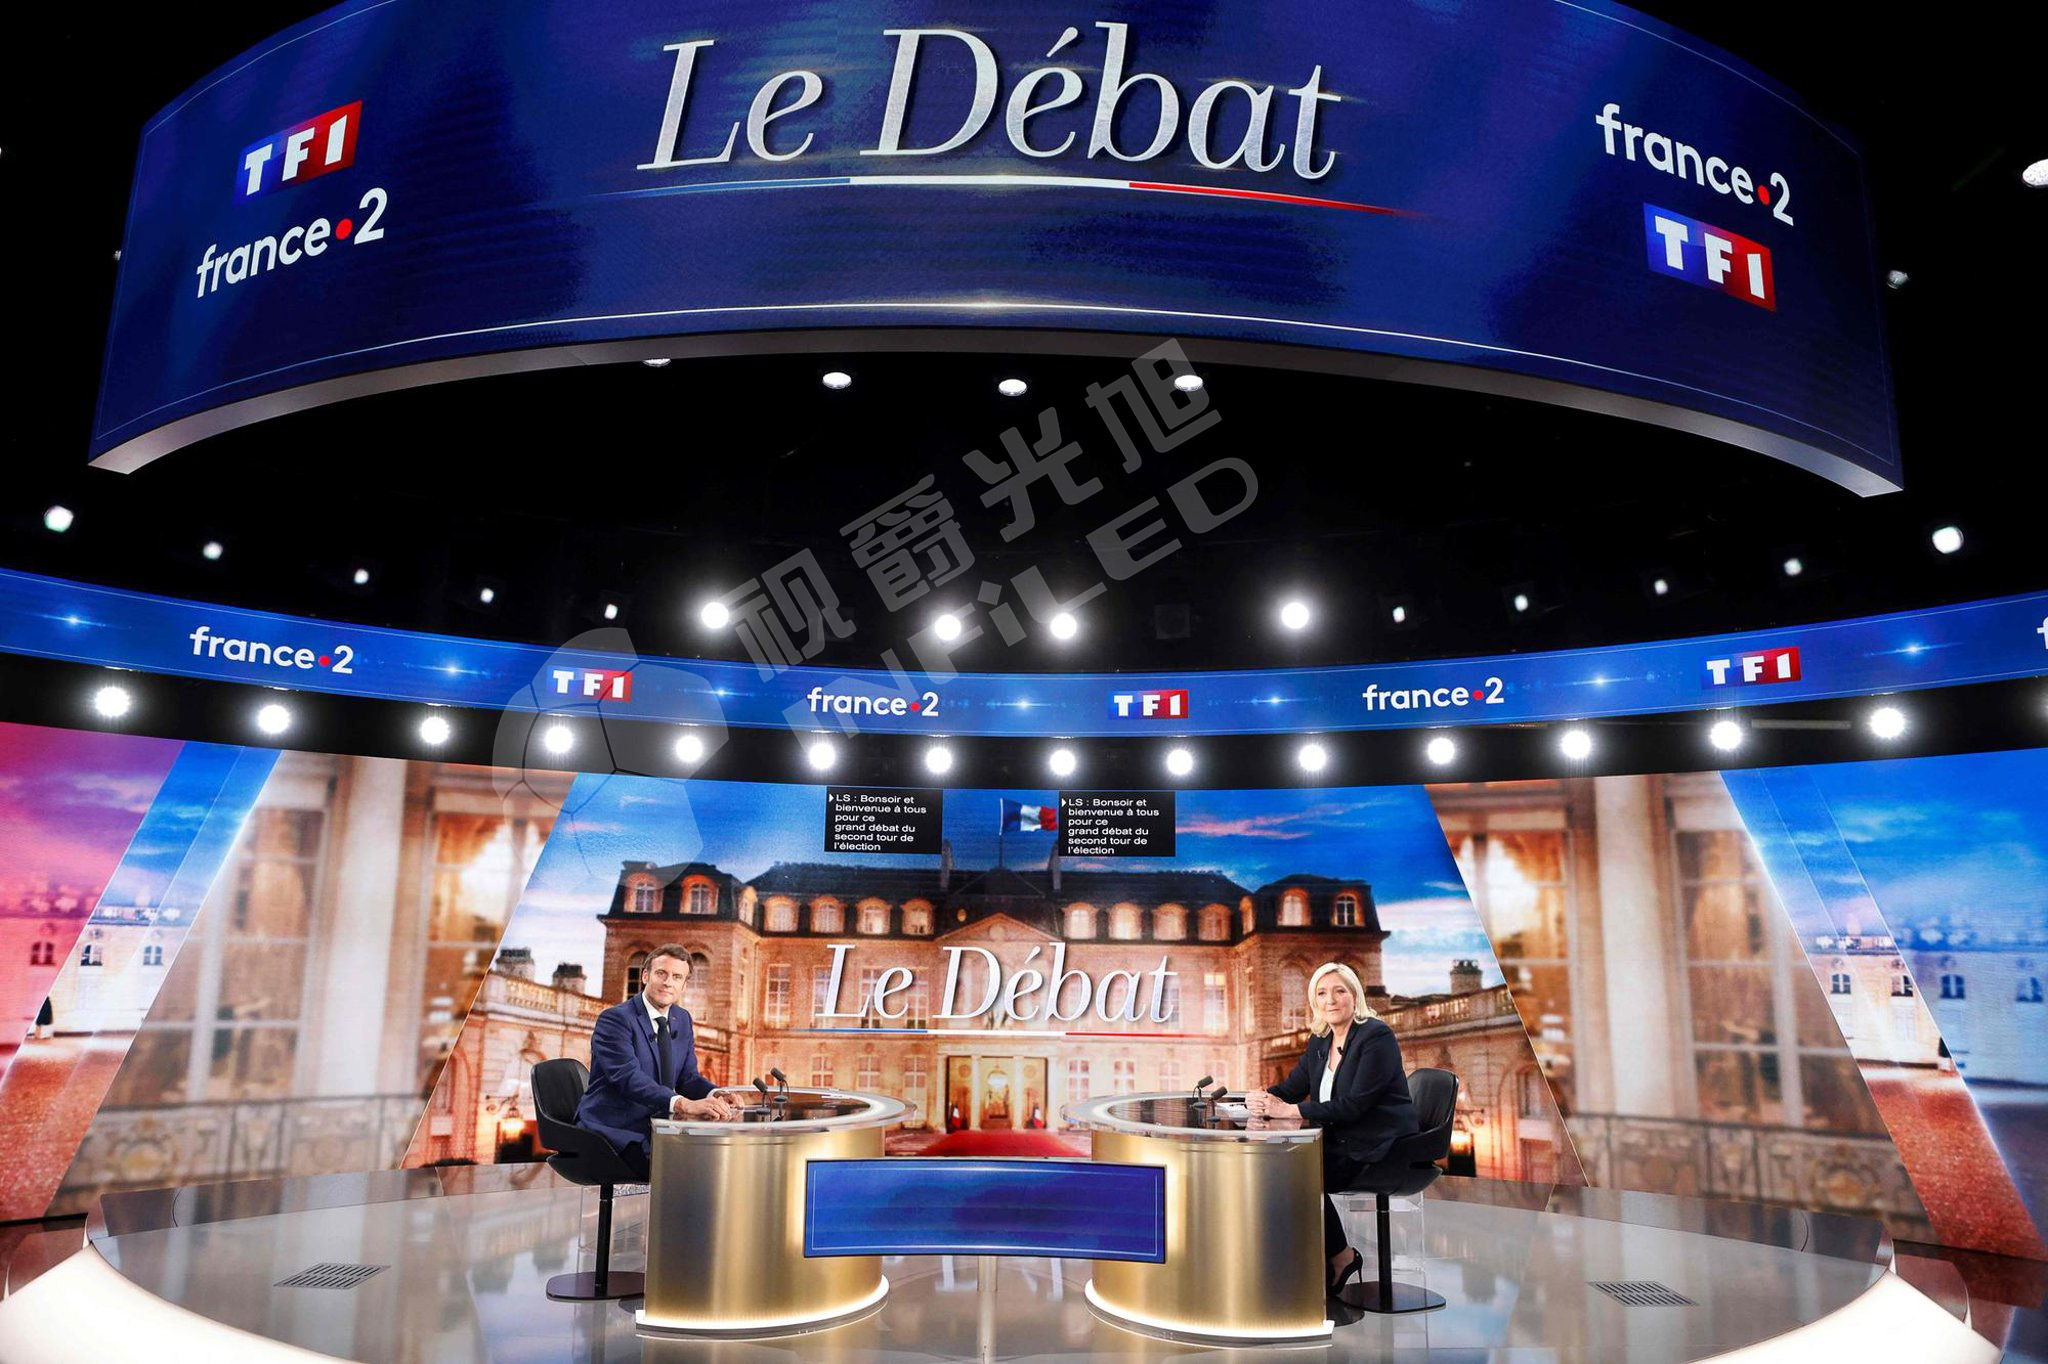 视爵光旭金刚系列LED显示屏精彩案例法国TF1演播厅 - 2022法国总统大选电视辩论